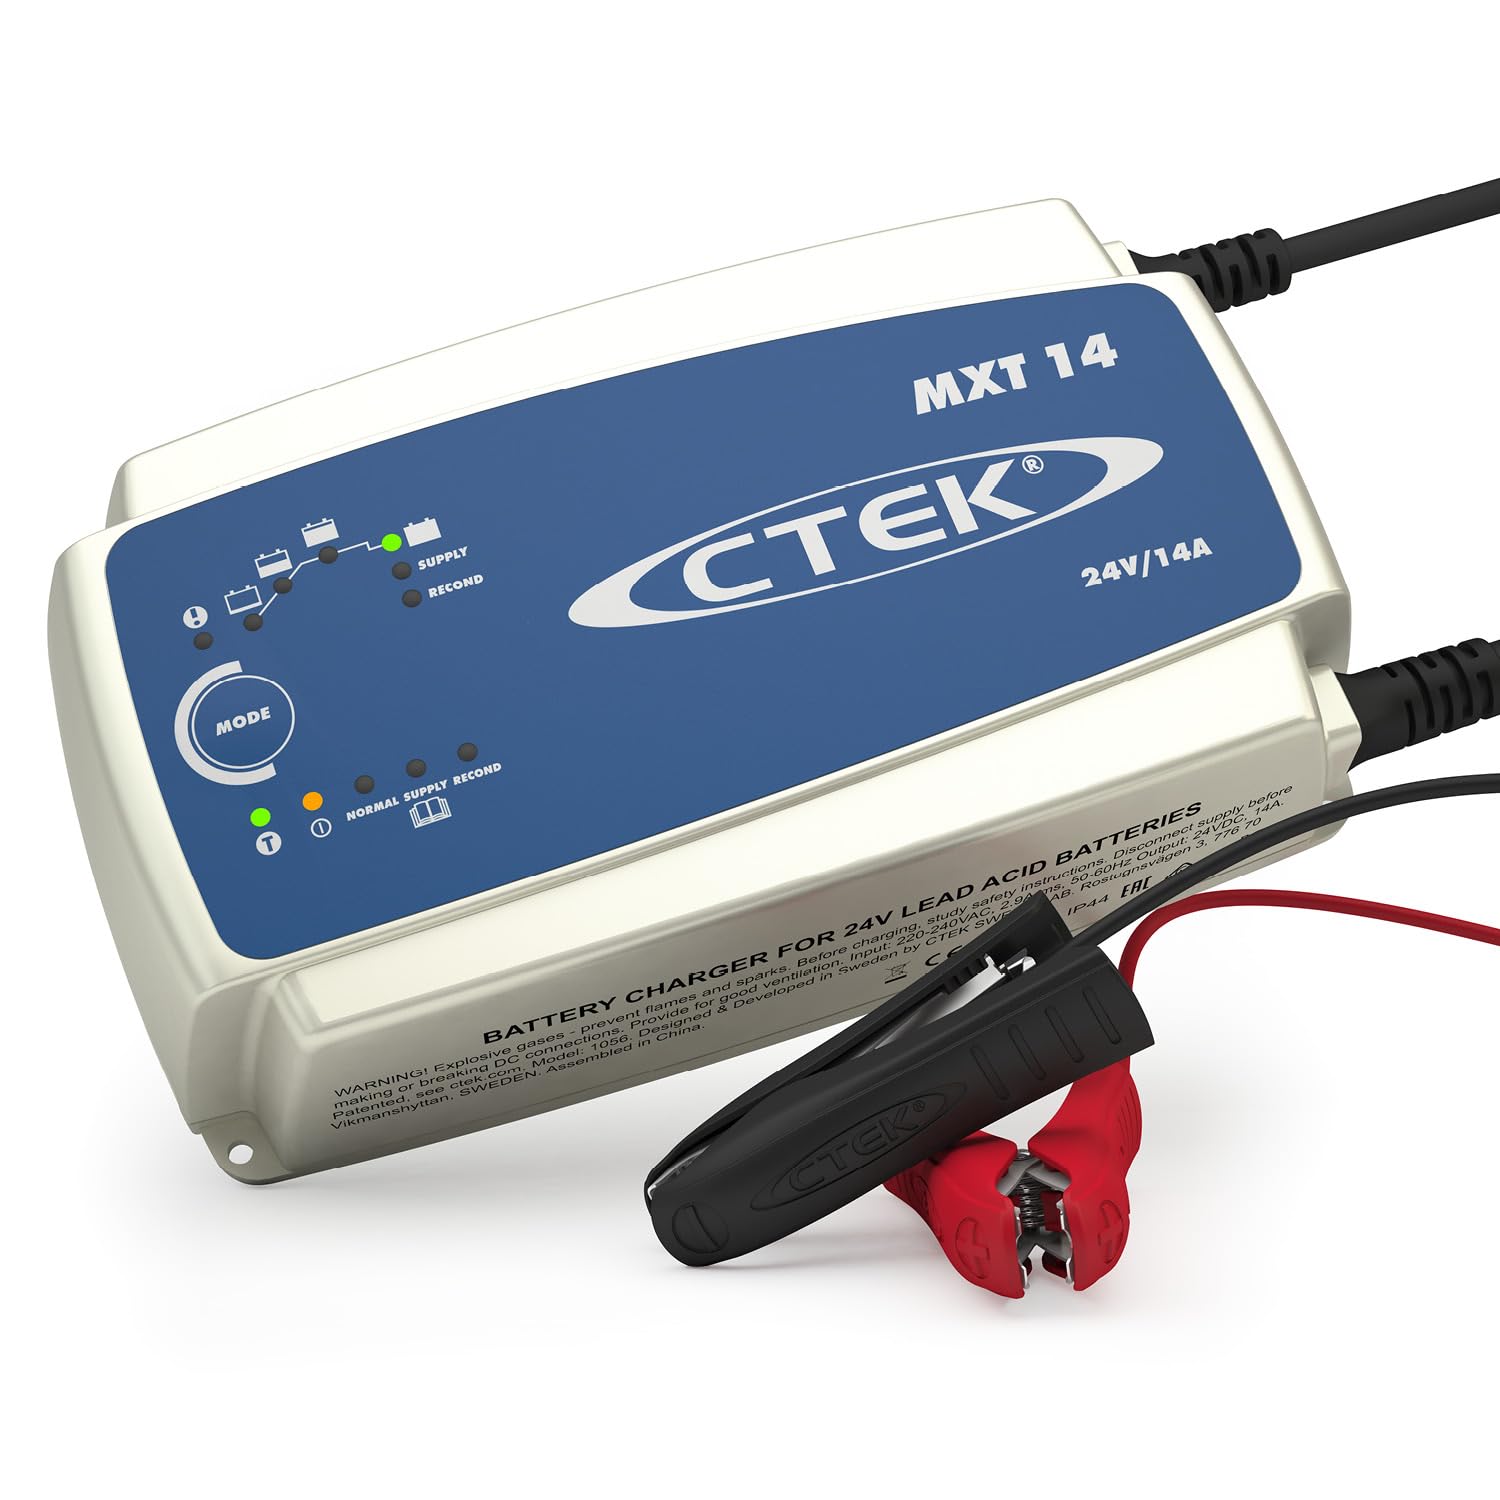 CTEK MXT 14 Multi-Funktions Batterieladegerät Mit 8-Stufen Technologie Unde Automatischer Temperaturkompensation, 24V, 14 Amp von CTEK